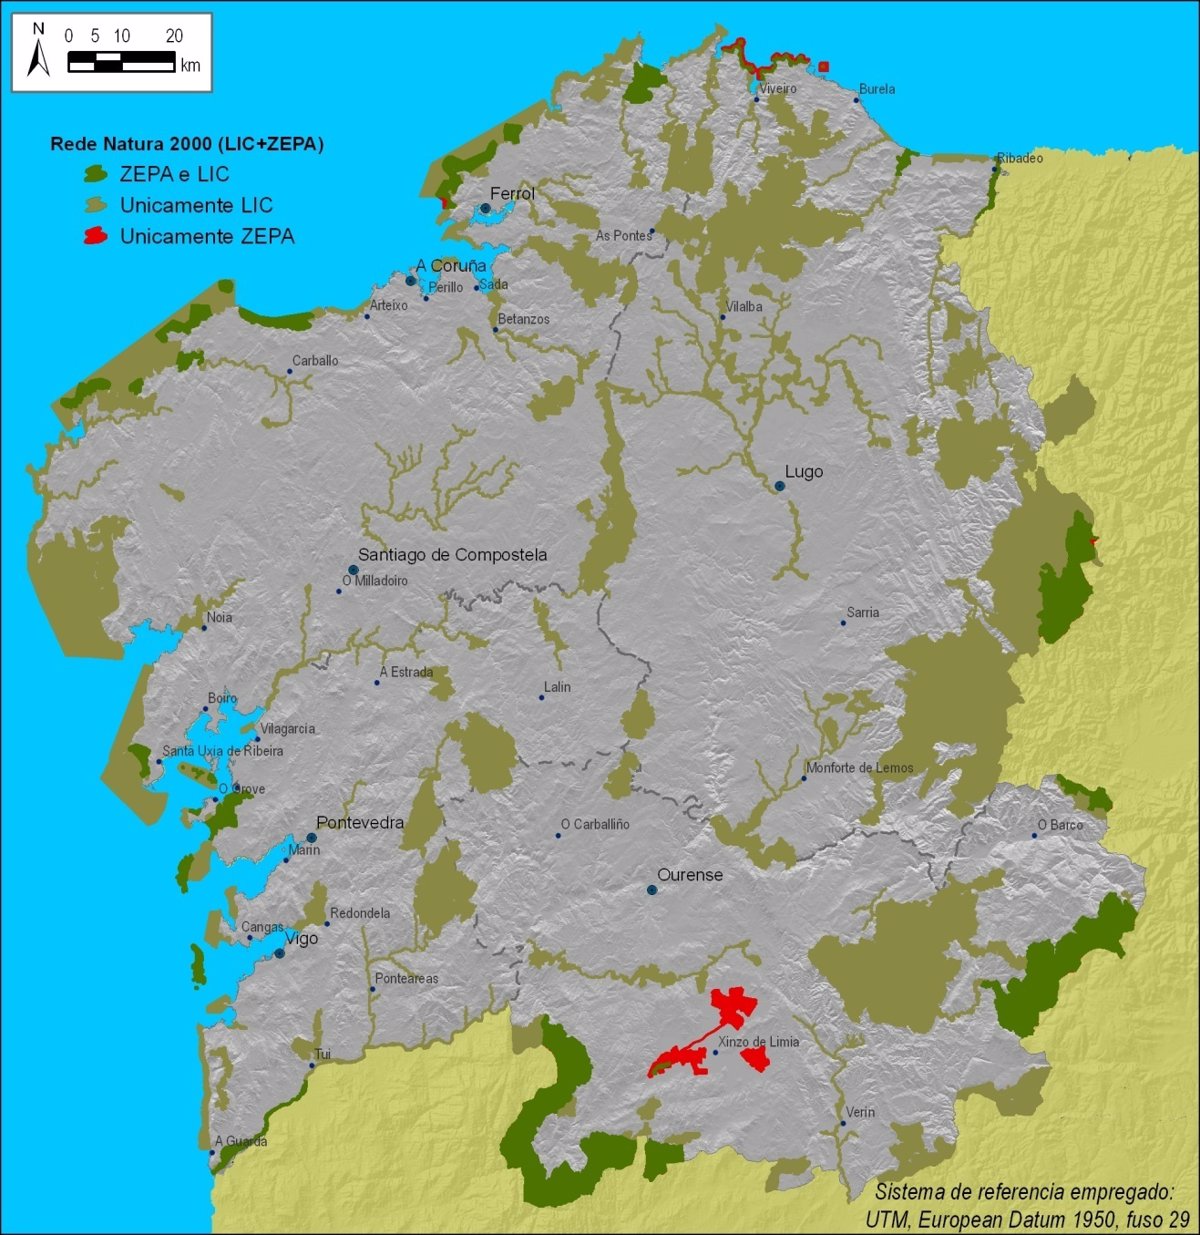 Galicia completará antes del verano su Red Natura 2000, que pasará del 12%  al 15% del territorio